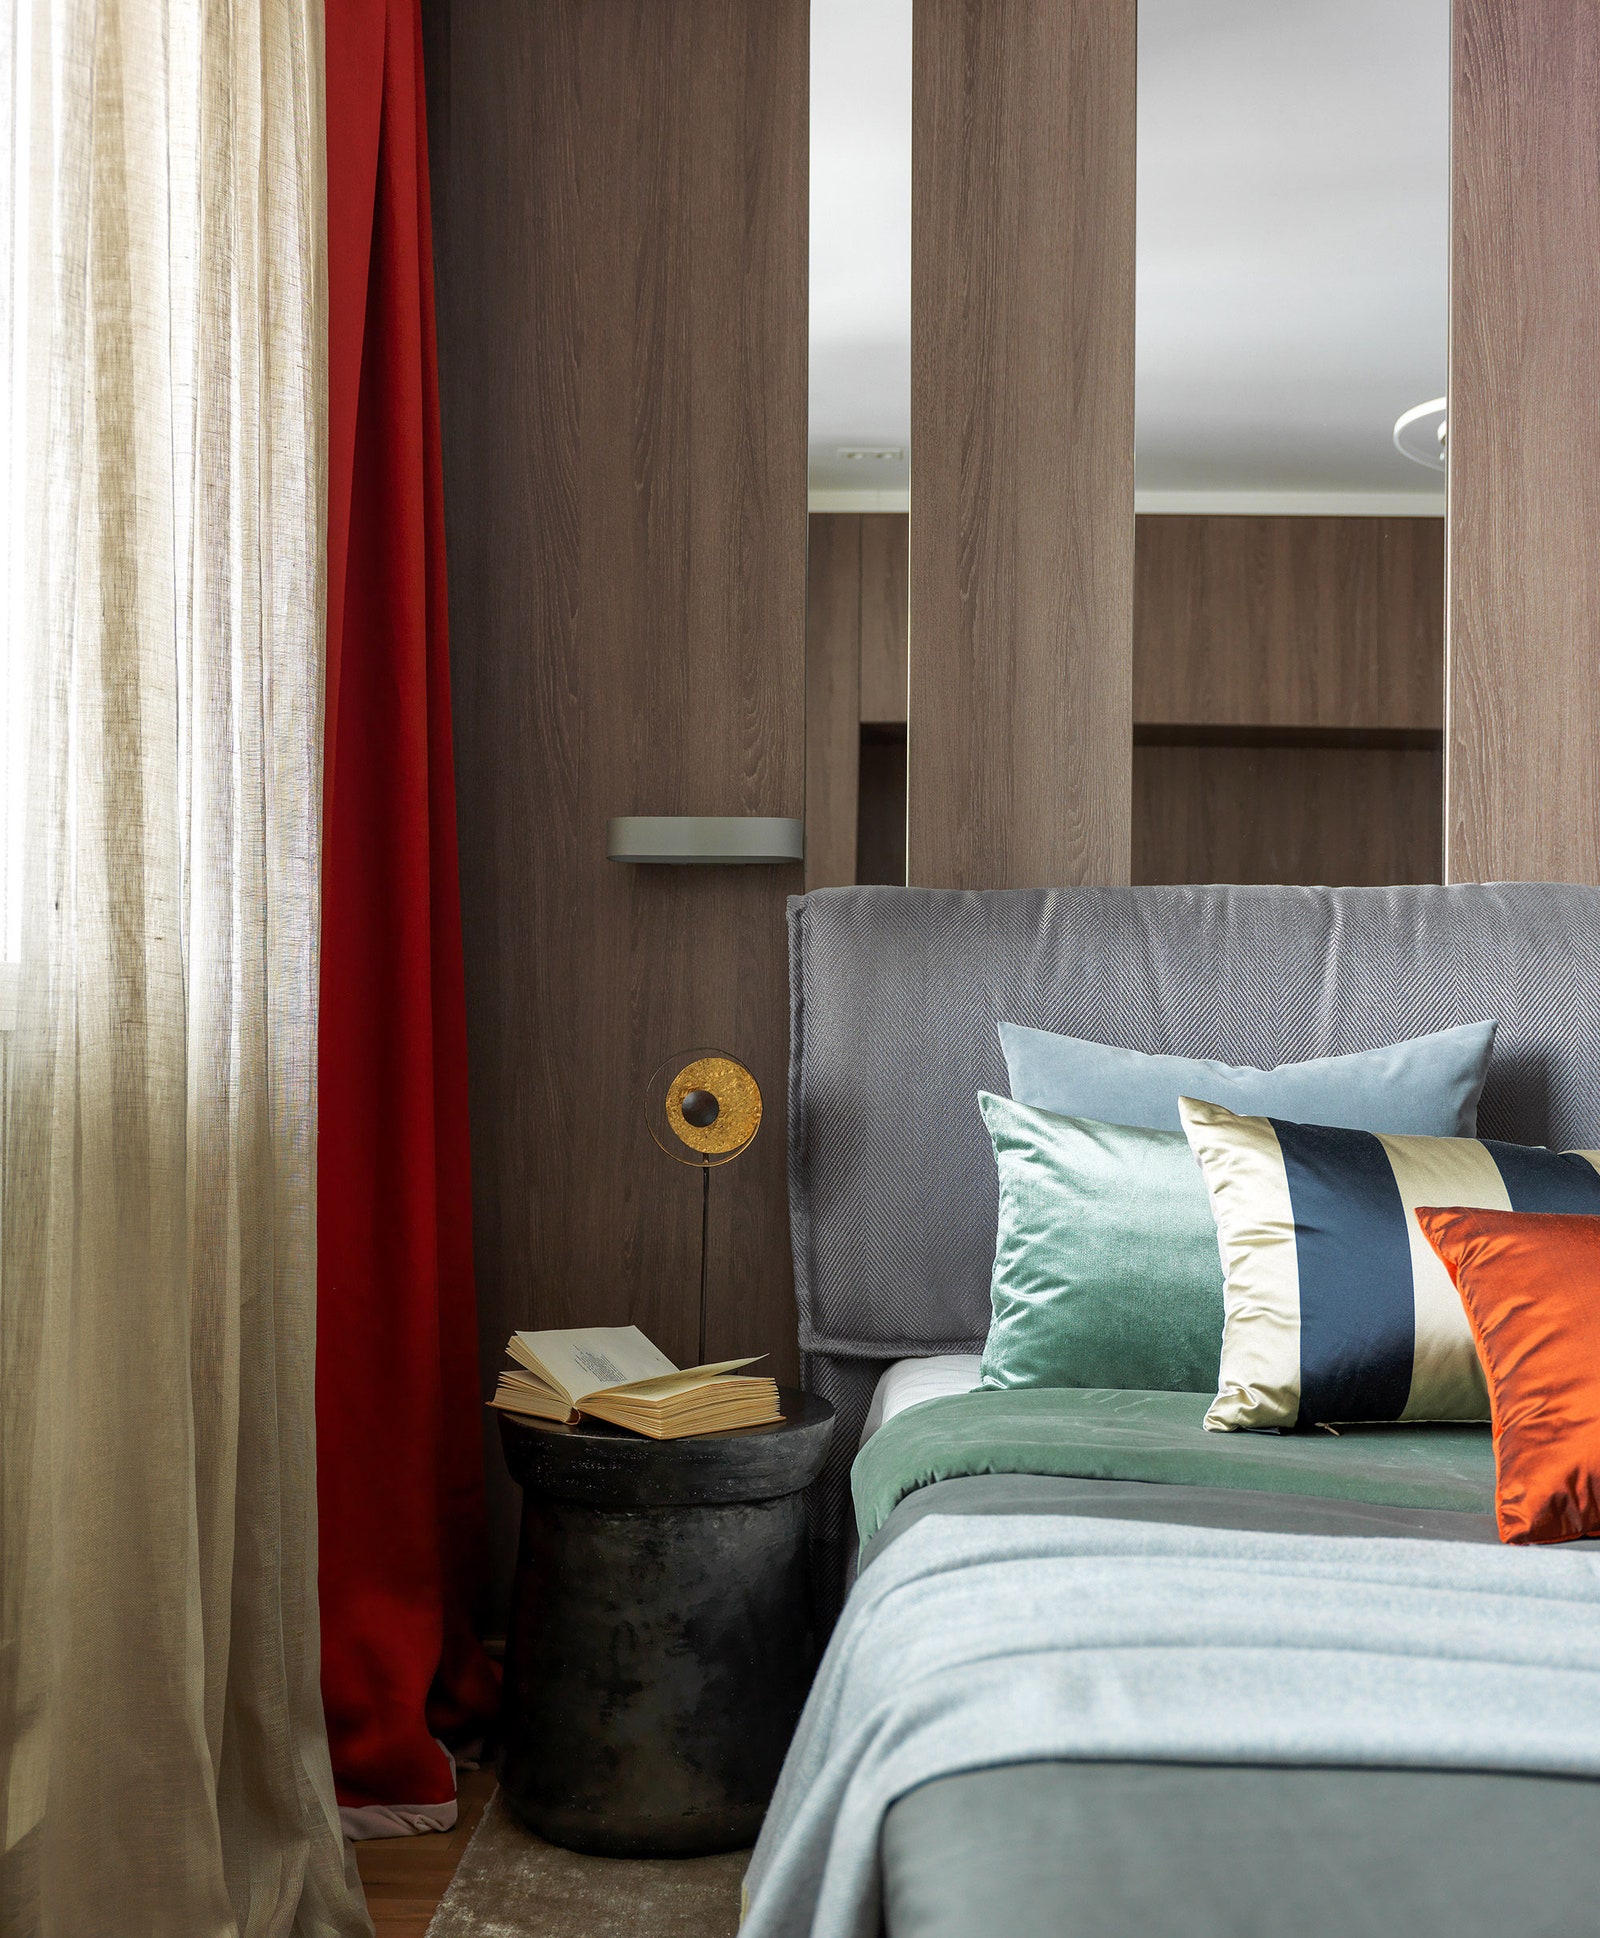 Кровать сделана на заказ прикроватный столик Savour Design светильник Holländer. Стена за изголовьем облицована шпоном и...